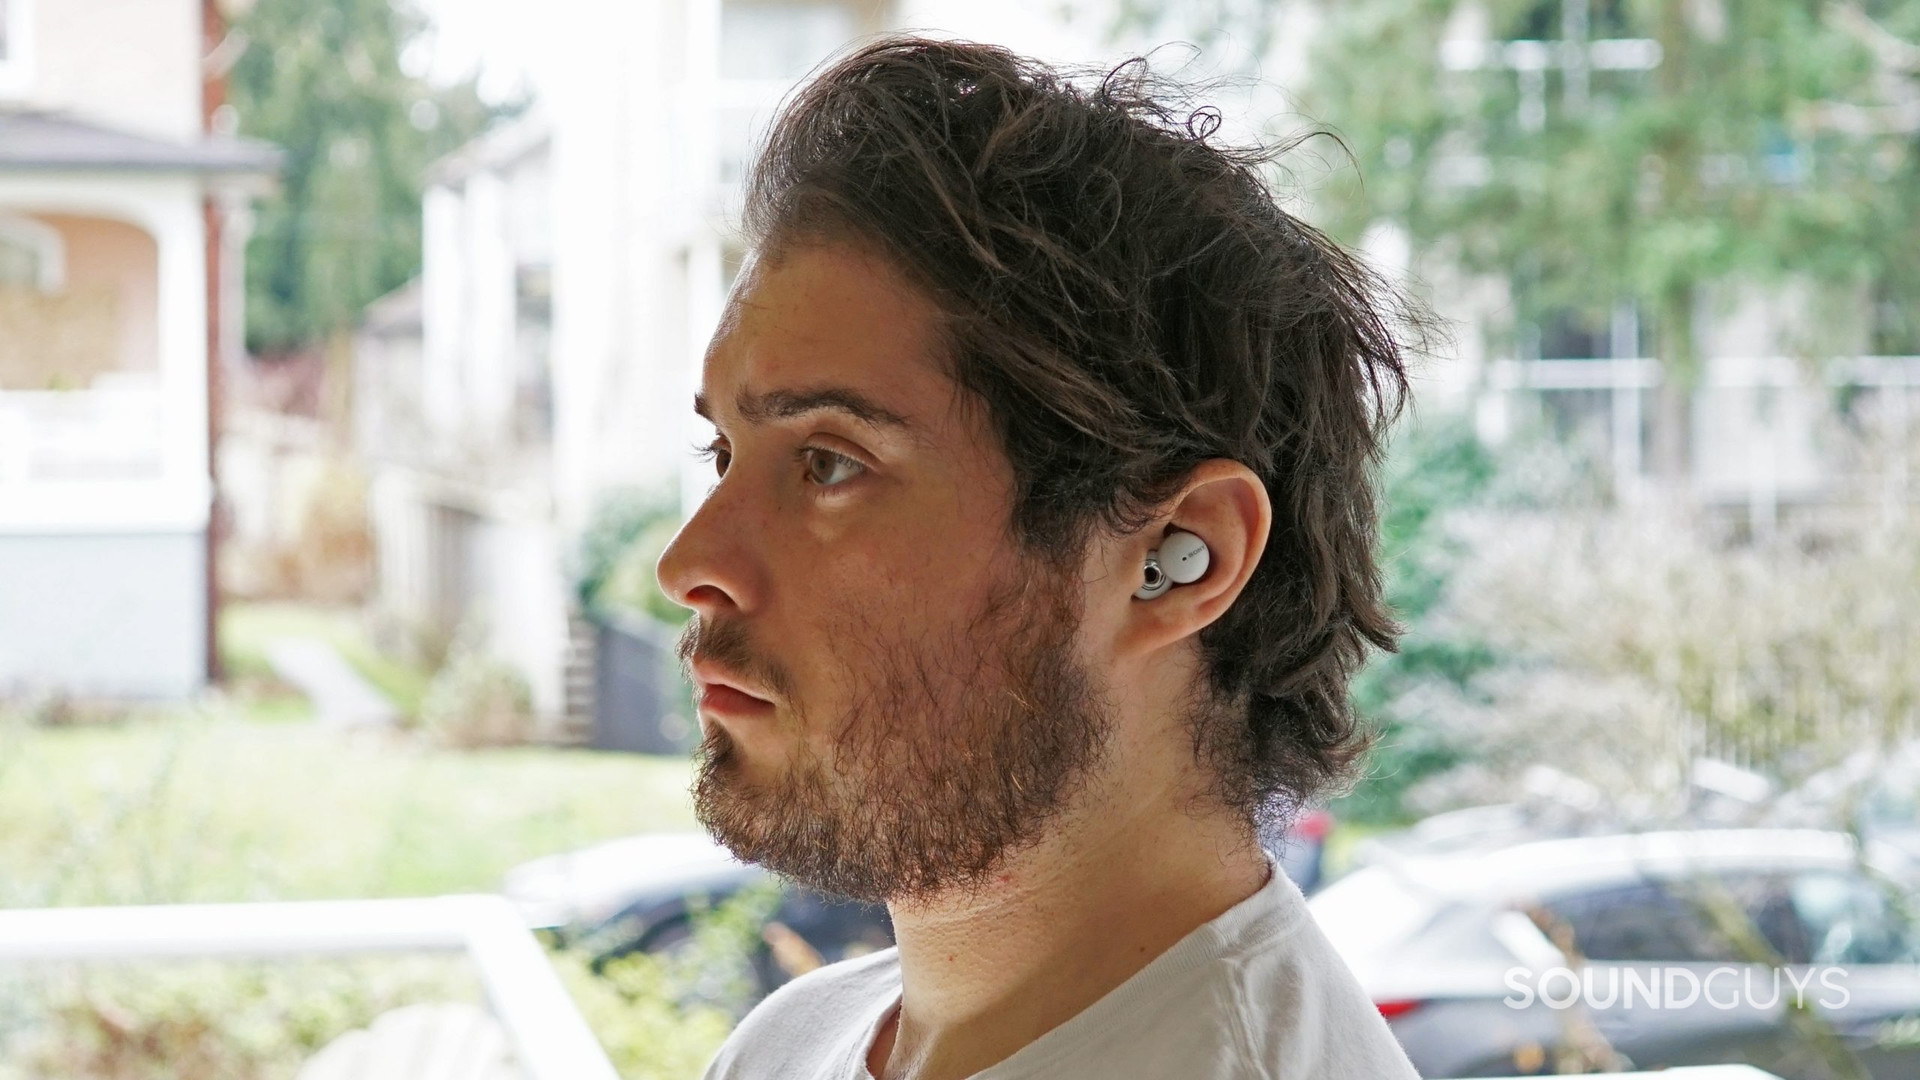 Sony Linkbuds being worn in ears.